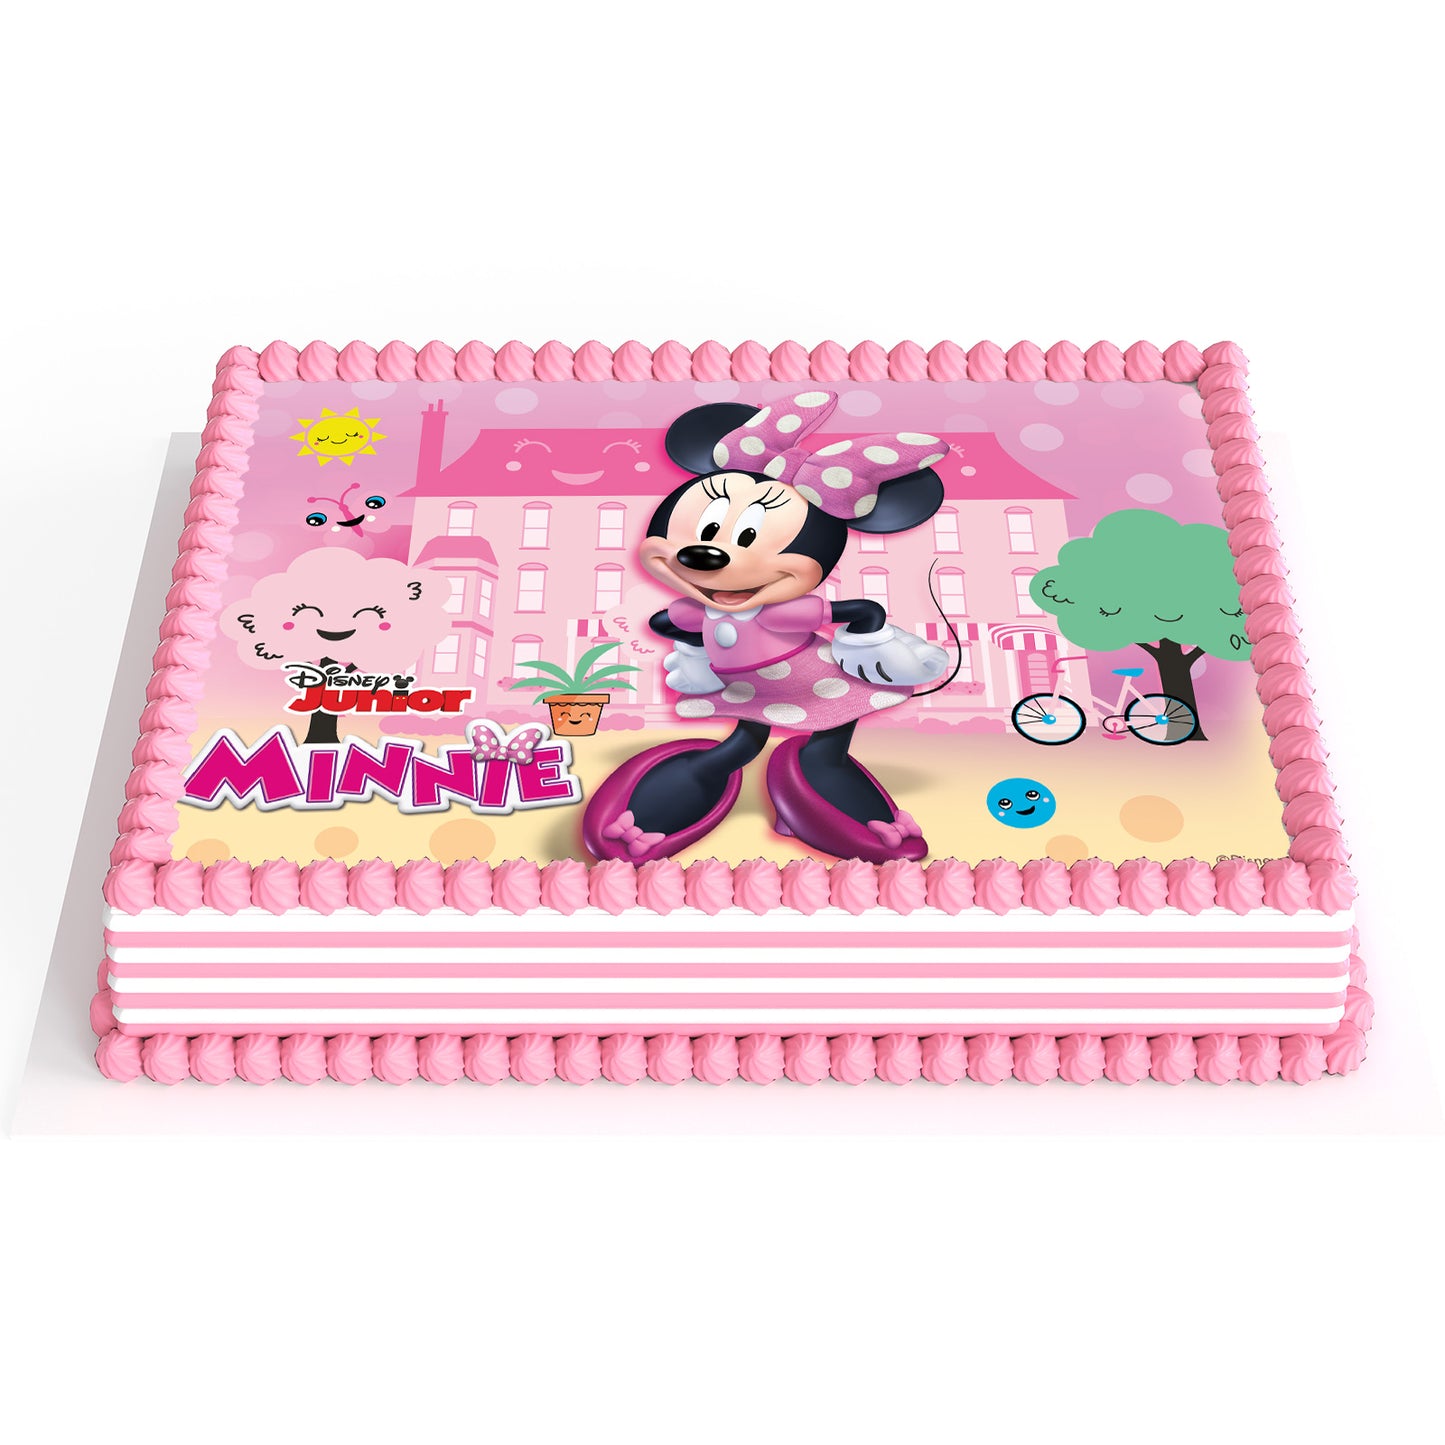 Minnie Mouse - 14,8 x 21cm Fondant